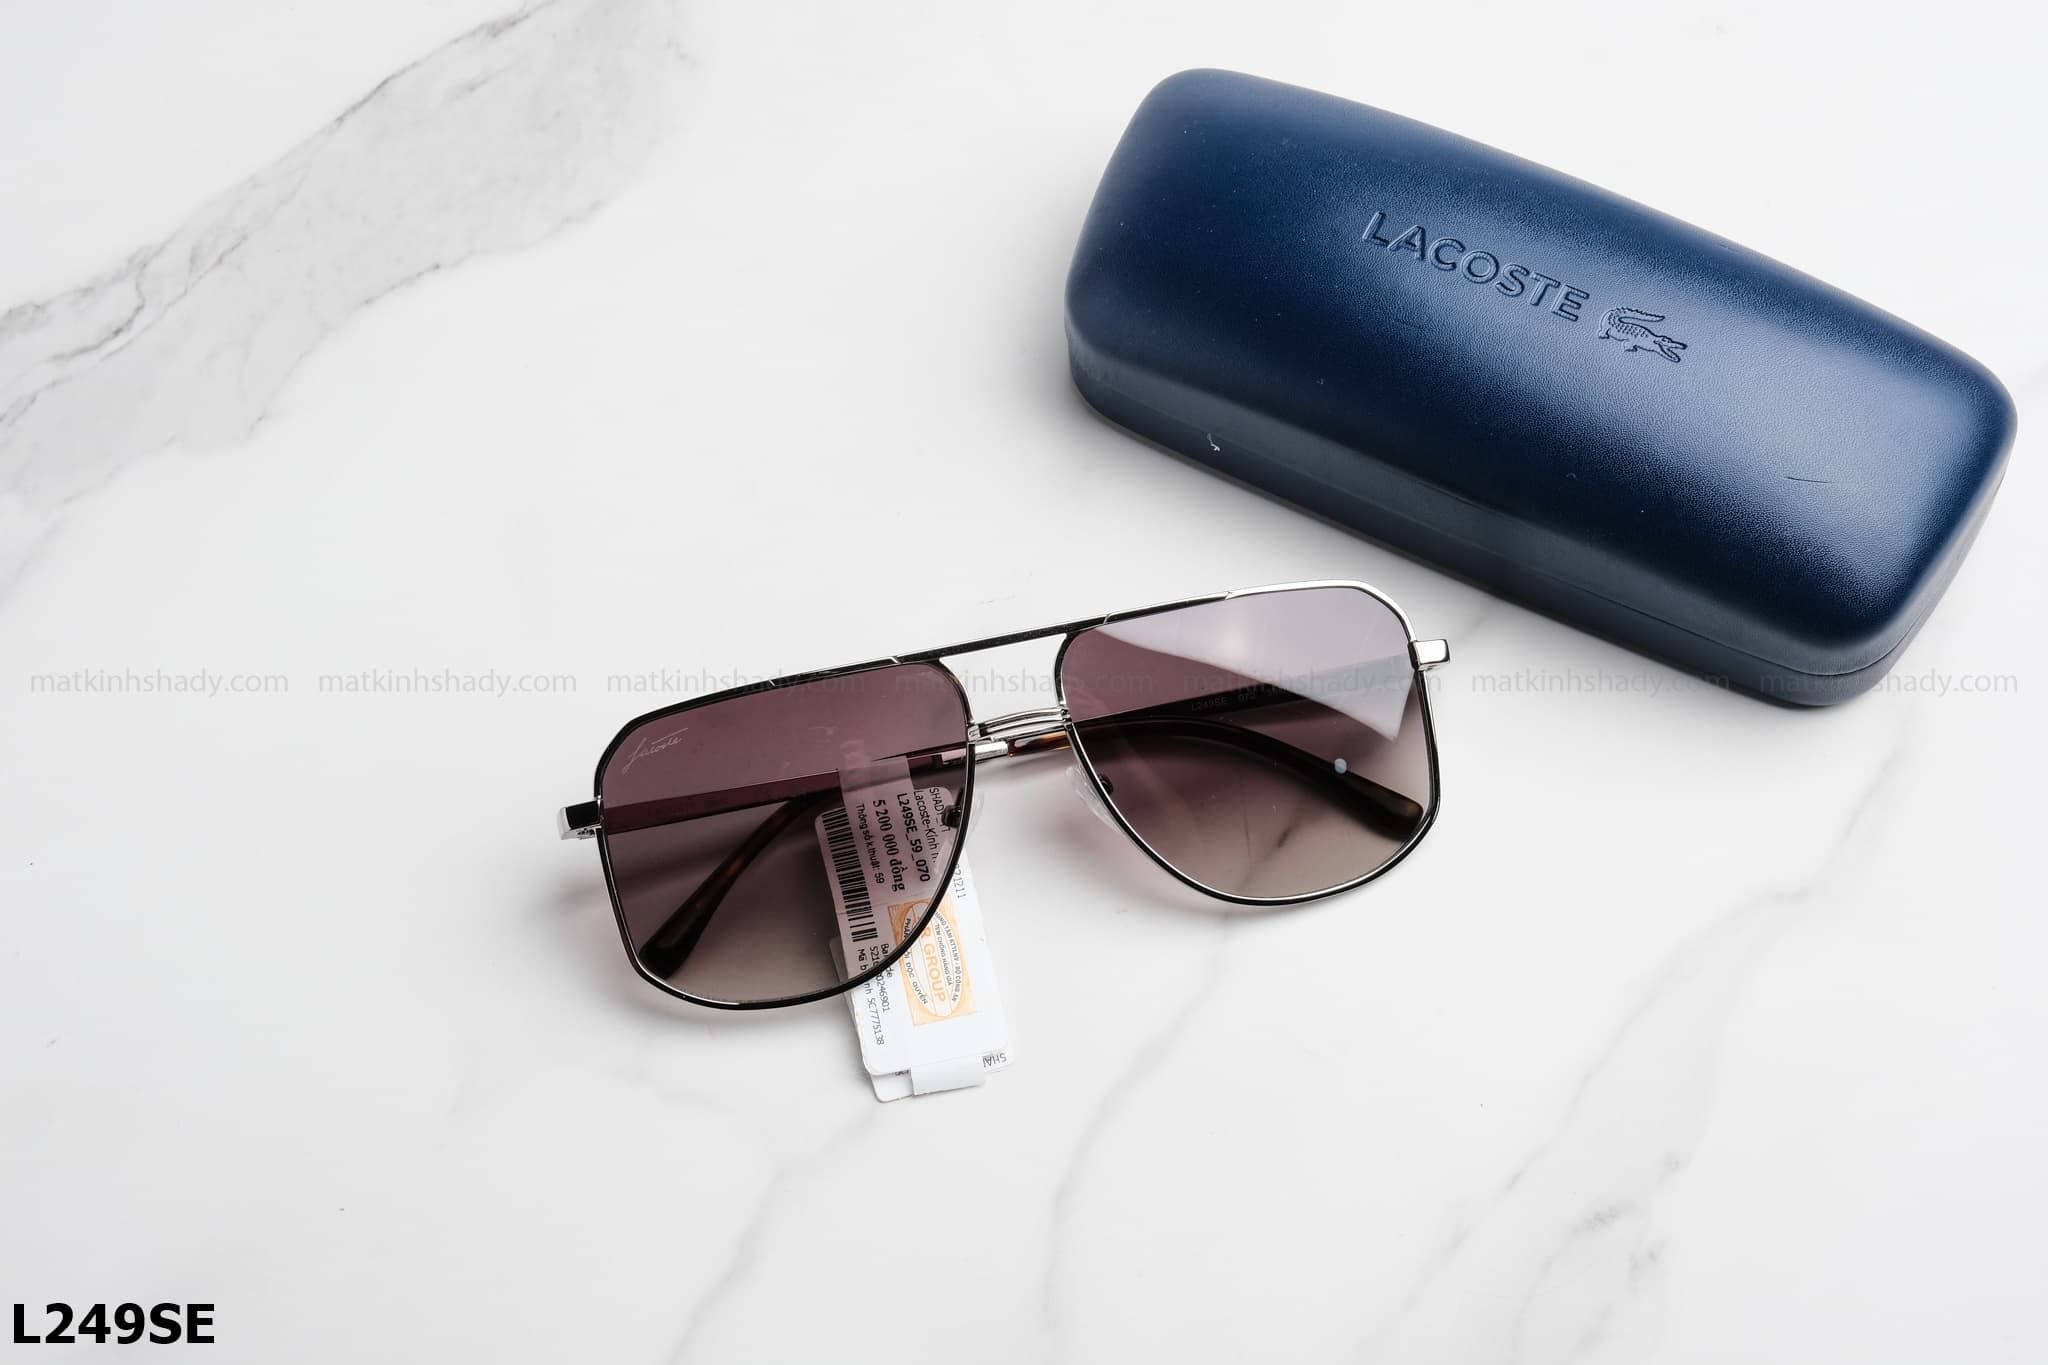  Lacoste Eyewear - Sunglasses - L249SE 